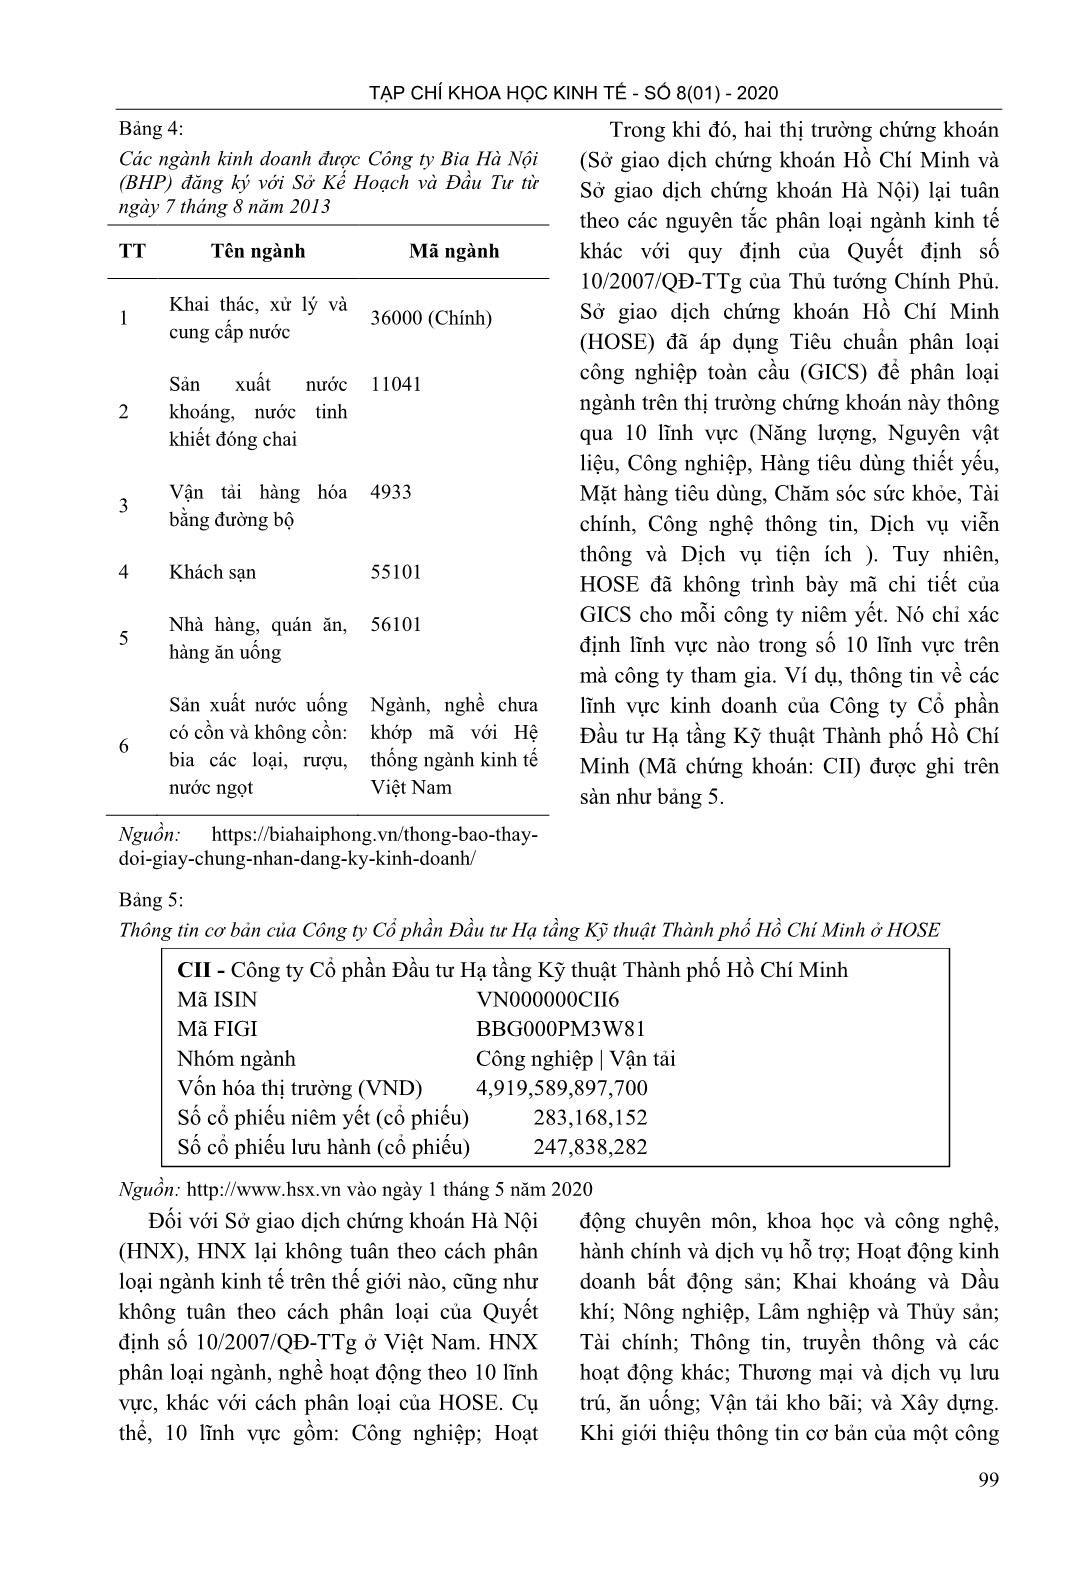 Phân loại ngành nghề: bất cập trong việc công bố thông tin trên thị trường chứng khoán Việt Nam trang 9